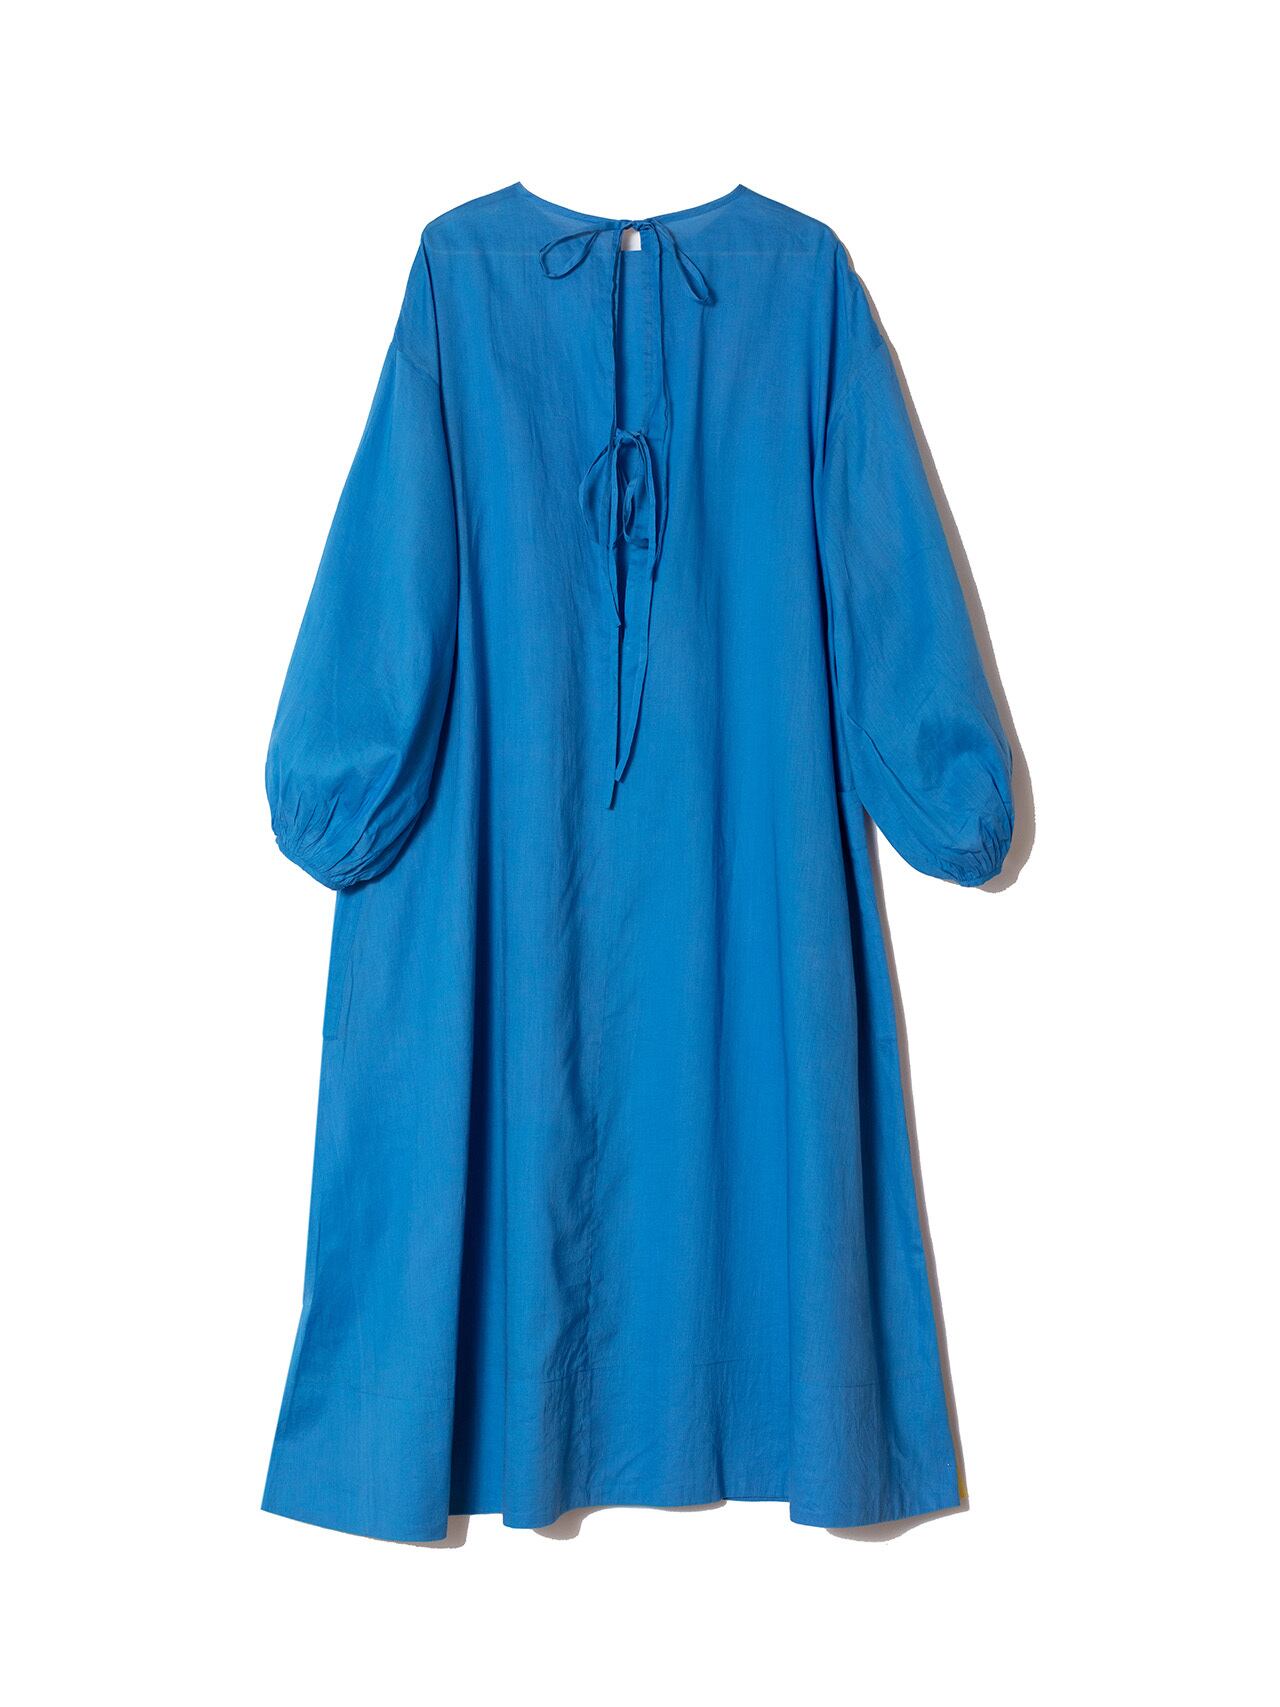 BHUV DRESS - BLUE | TADO